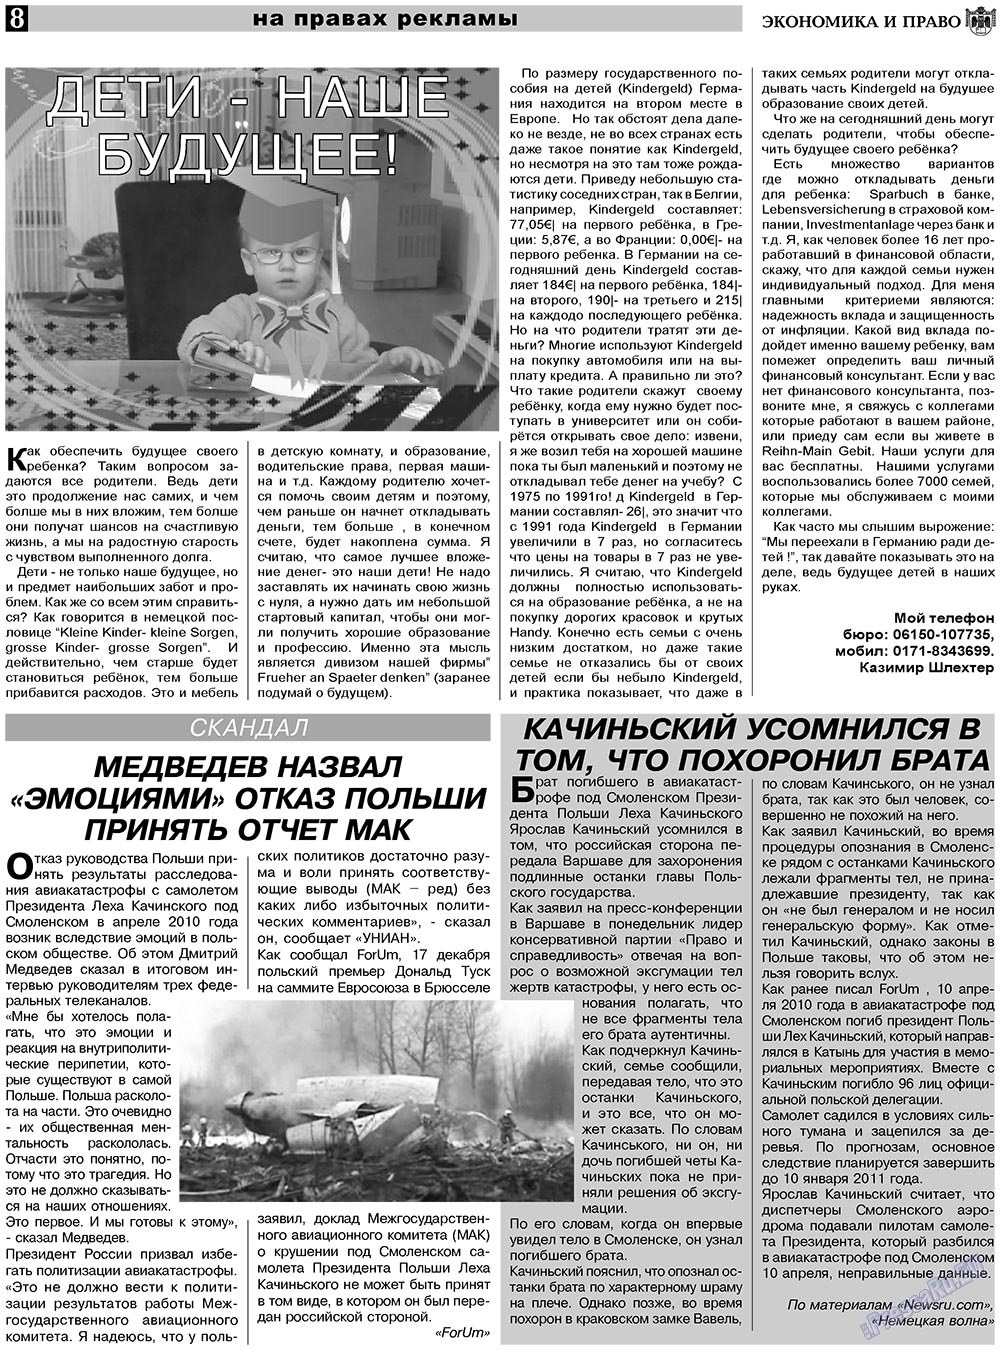 Экономика и право, газета. 2011 №1 стр.8